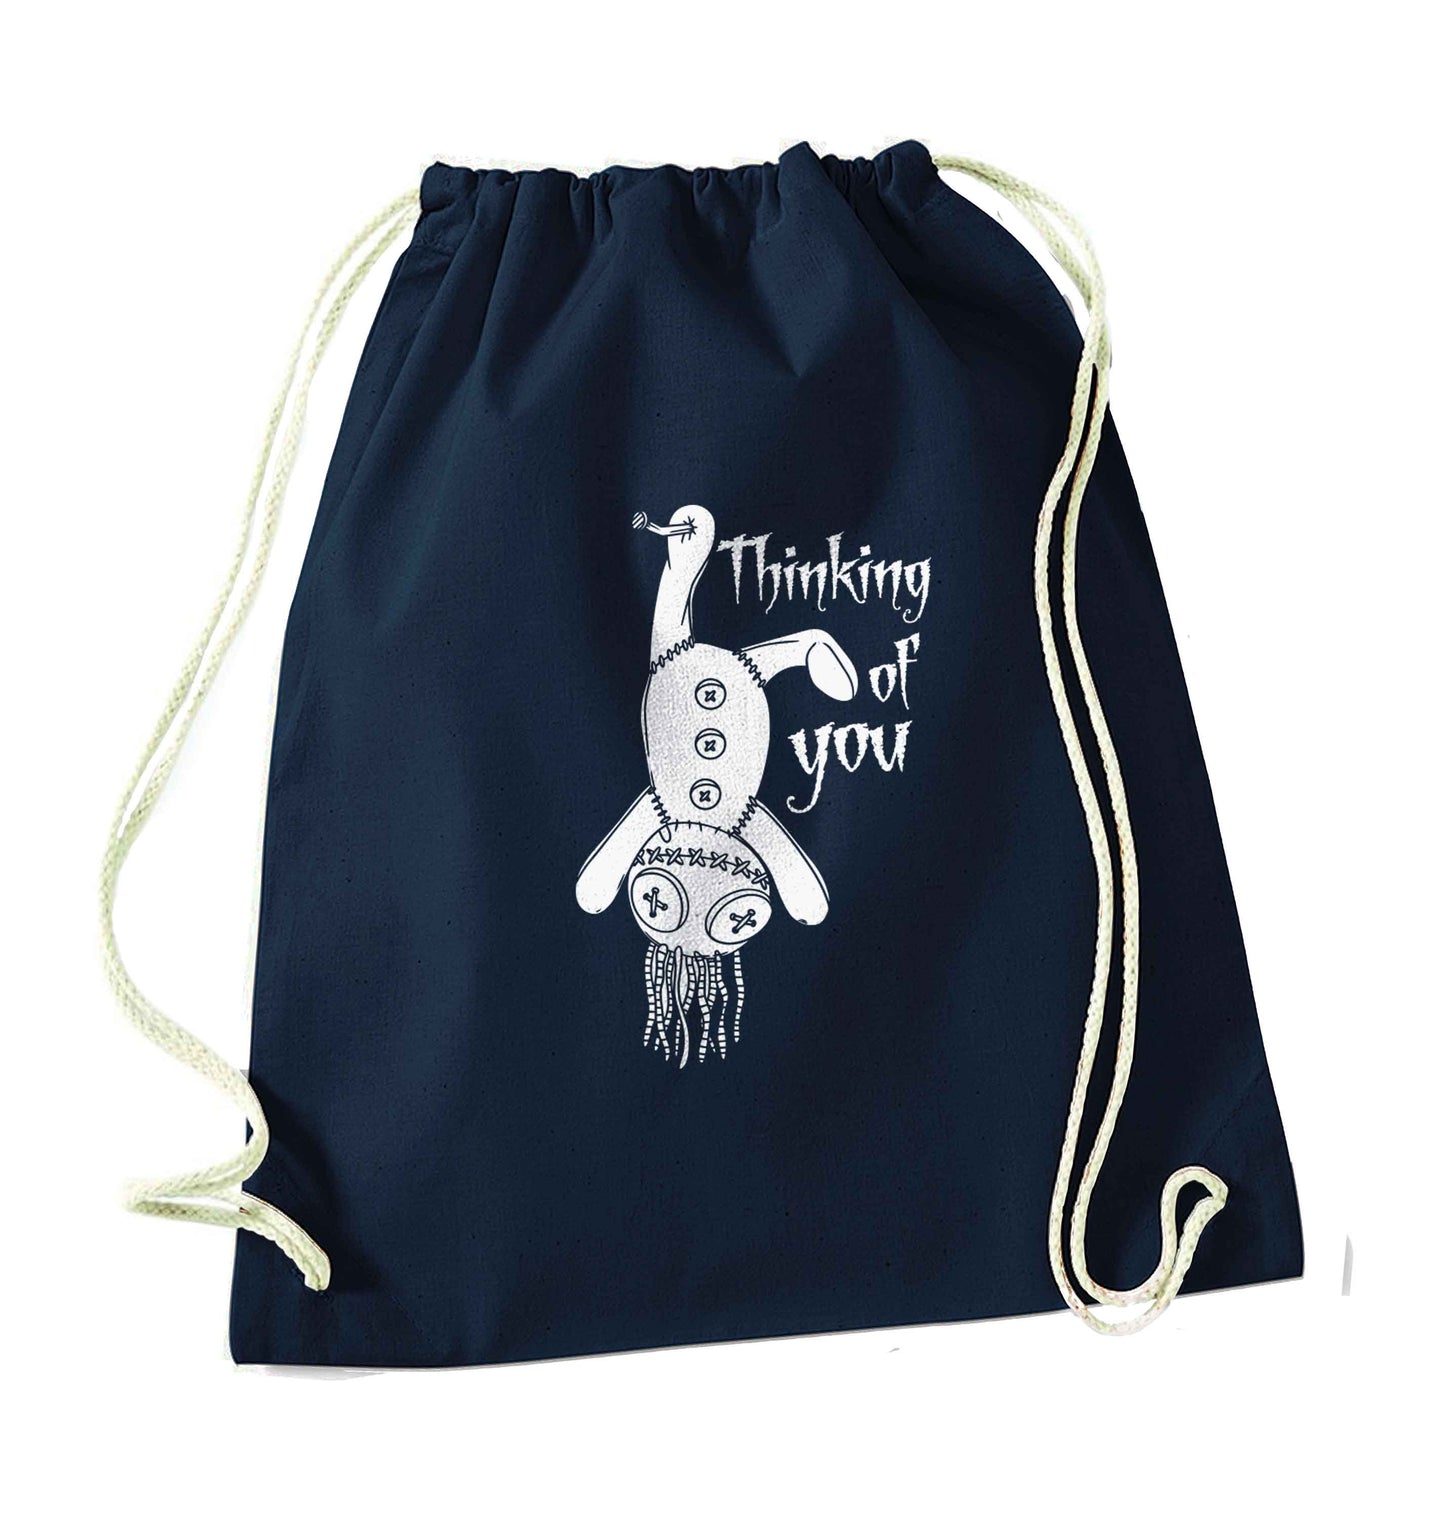 Thinking of you navy drawstring bag